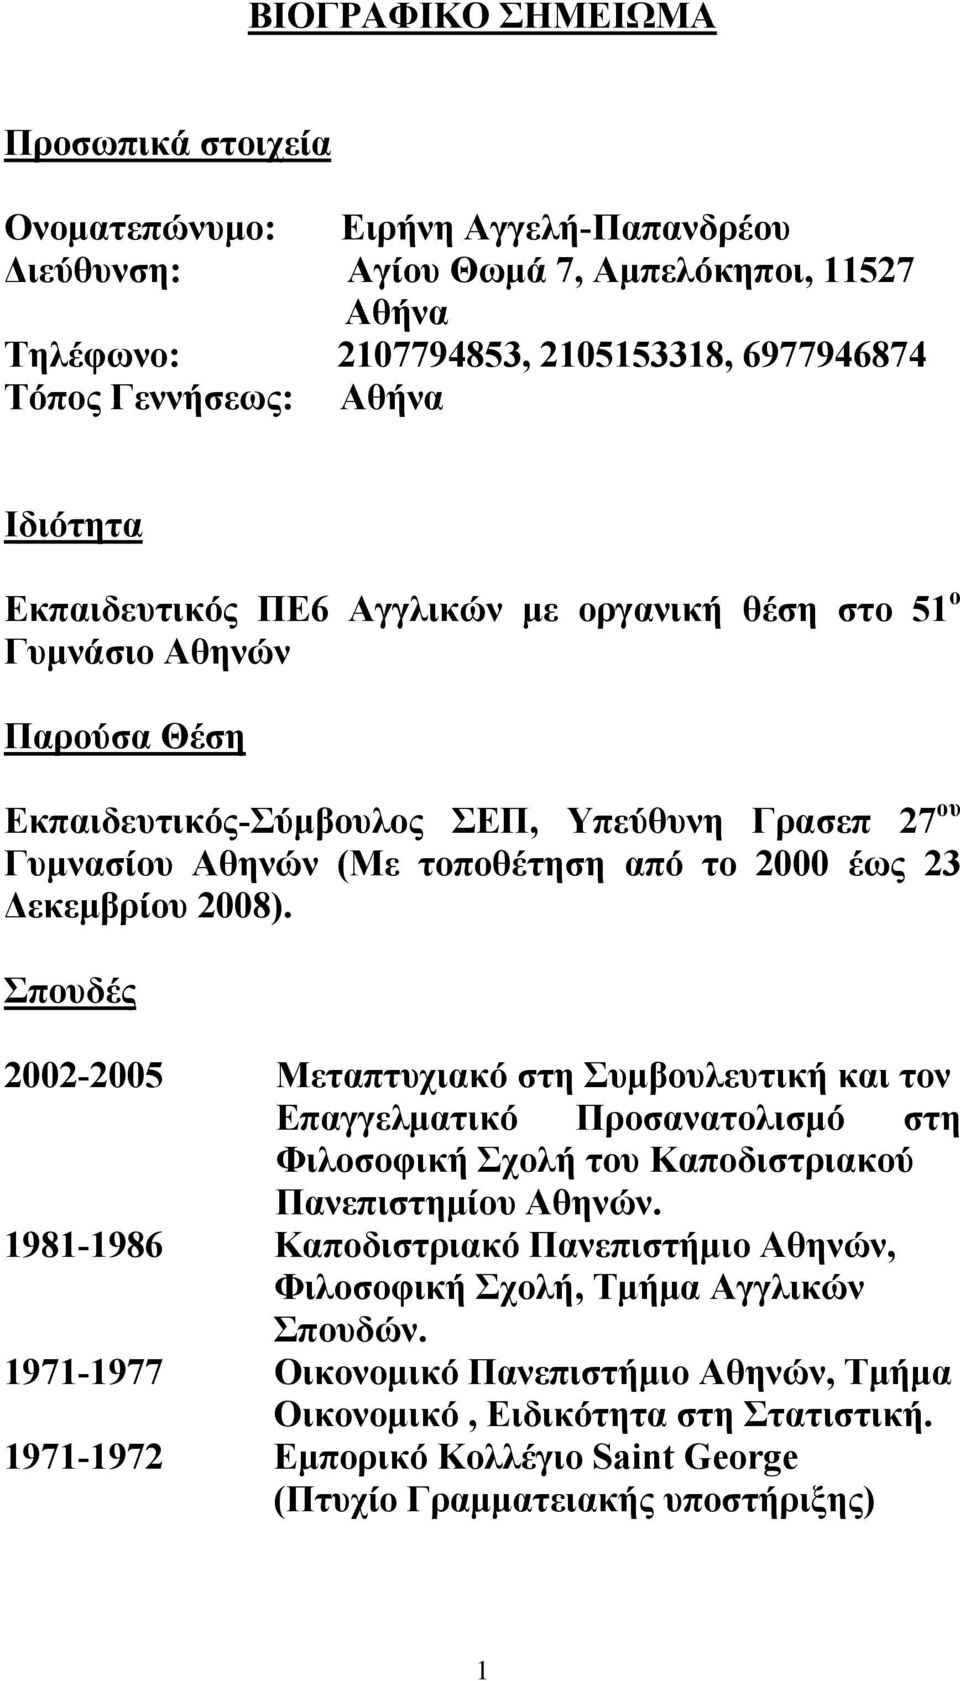 Δεκεμβρίου 2008). Σπουδές 2002-2005 Μεταπτυχιακό στη Συμβουλευτική και τον Επαγγελματικό Προσανατολισμό στη Φιλοσοφική Σχολή του Καποδιστριακού Πανεπιστημίου Αθηνών.